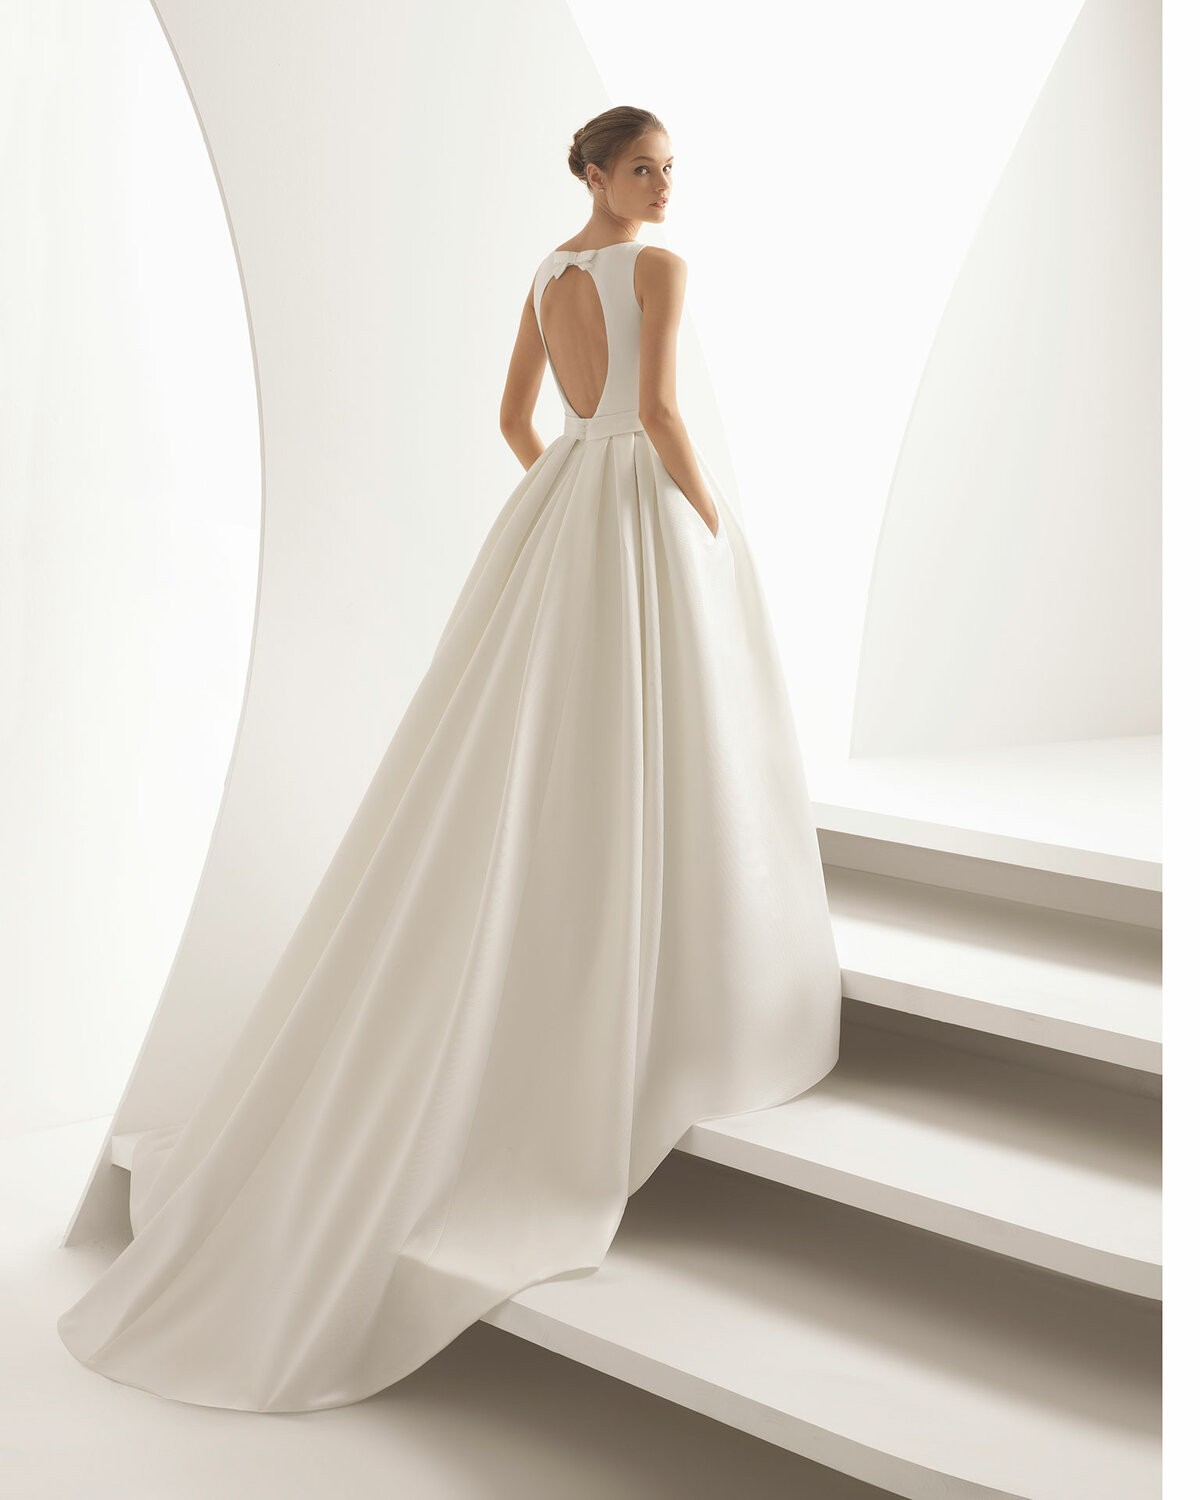 ARACELI - abito da sposa collezione 2020 - Rosa Clarà